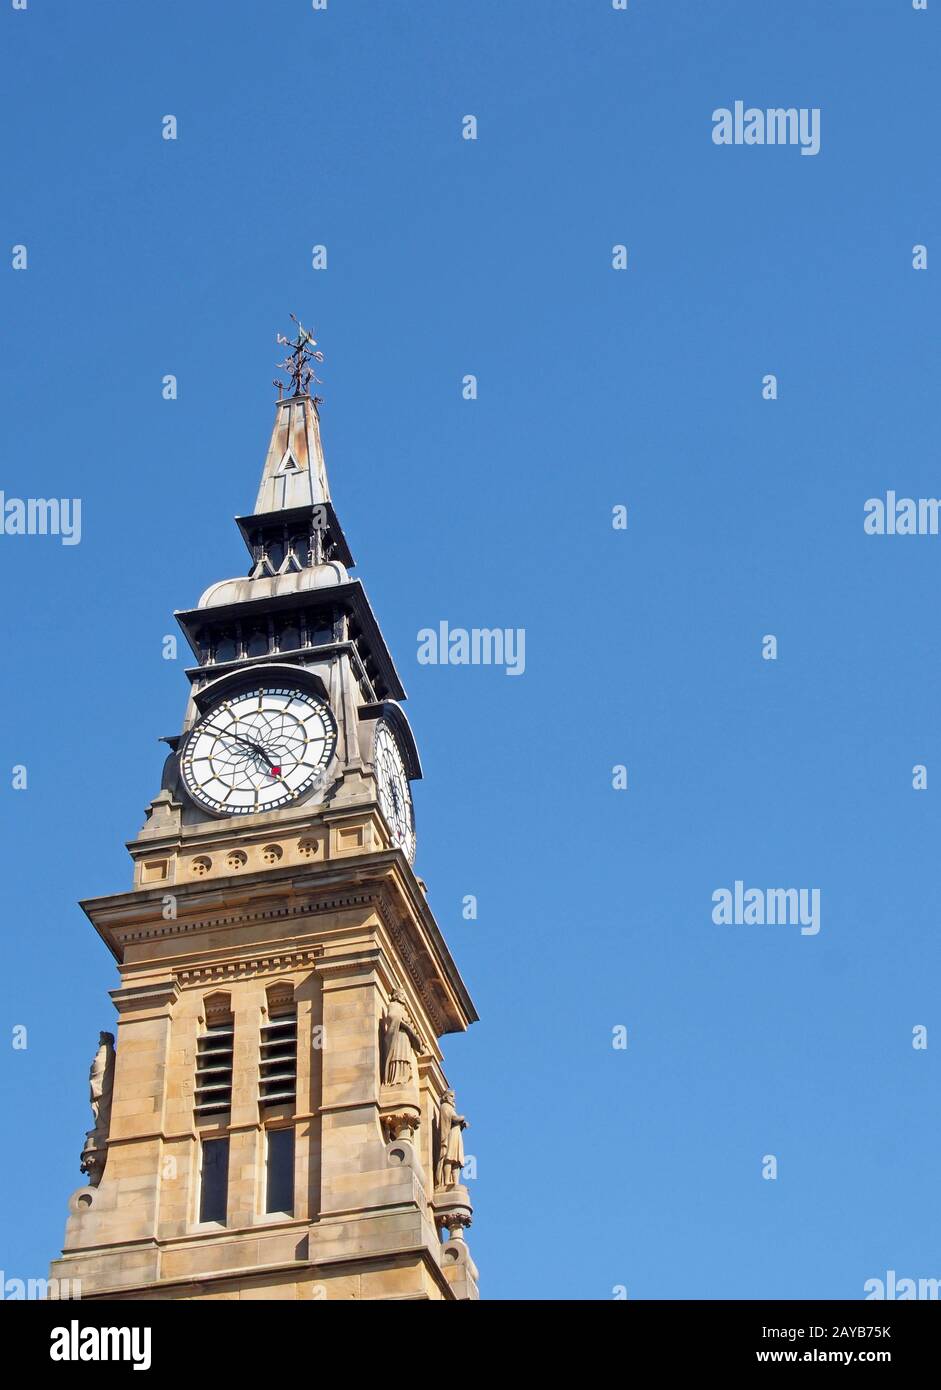 la torre ornata dell'orologio del 19 ° secolo storico edificio atkinson a southport merseyside contro un cielo blu estate Foto Stock